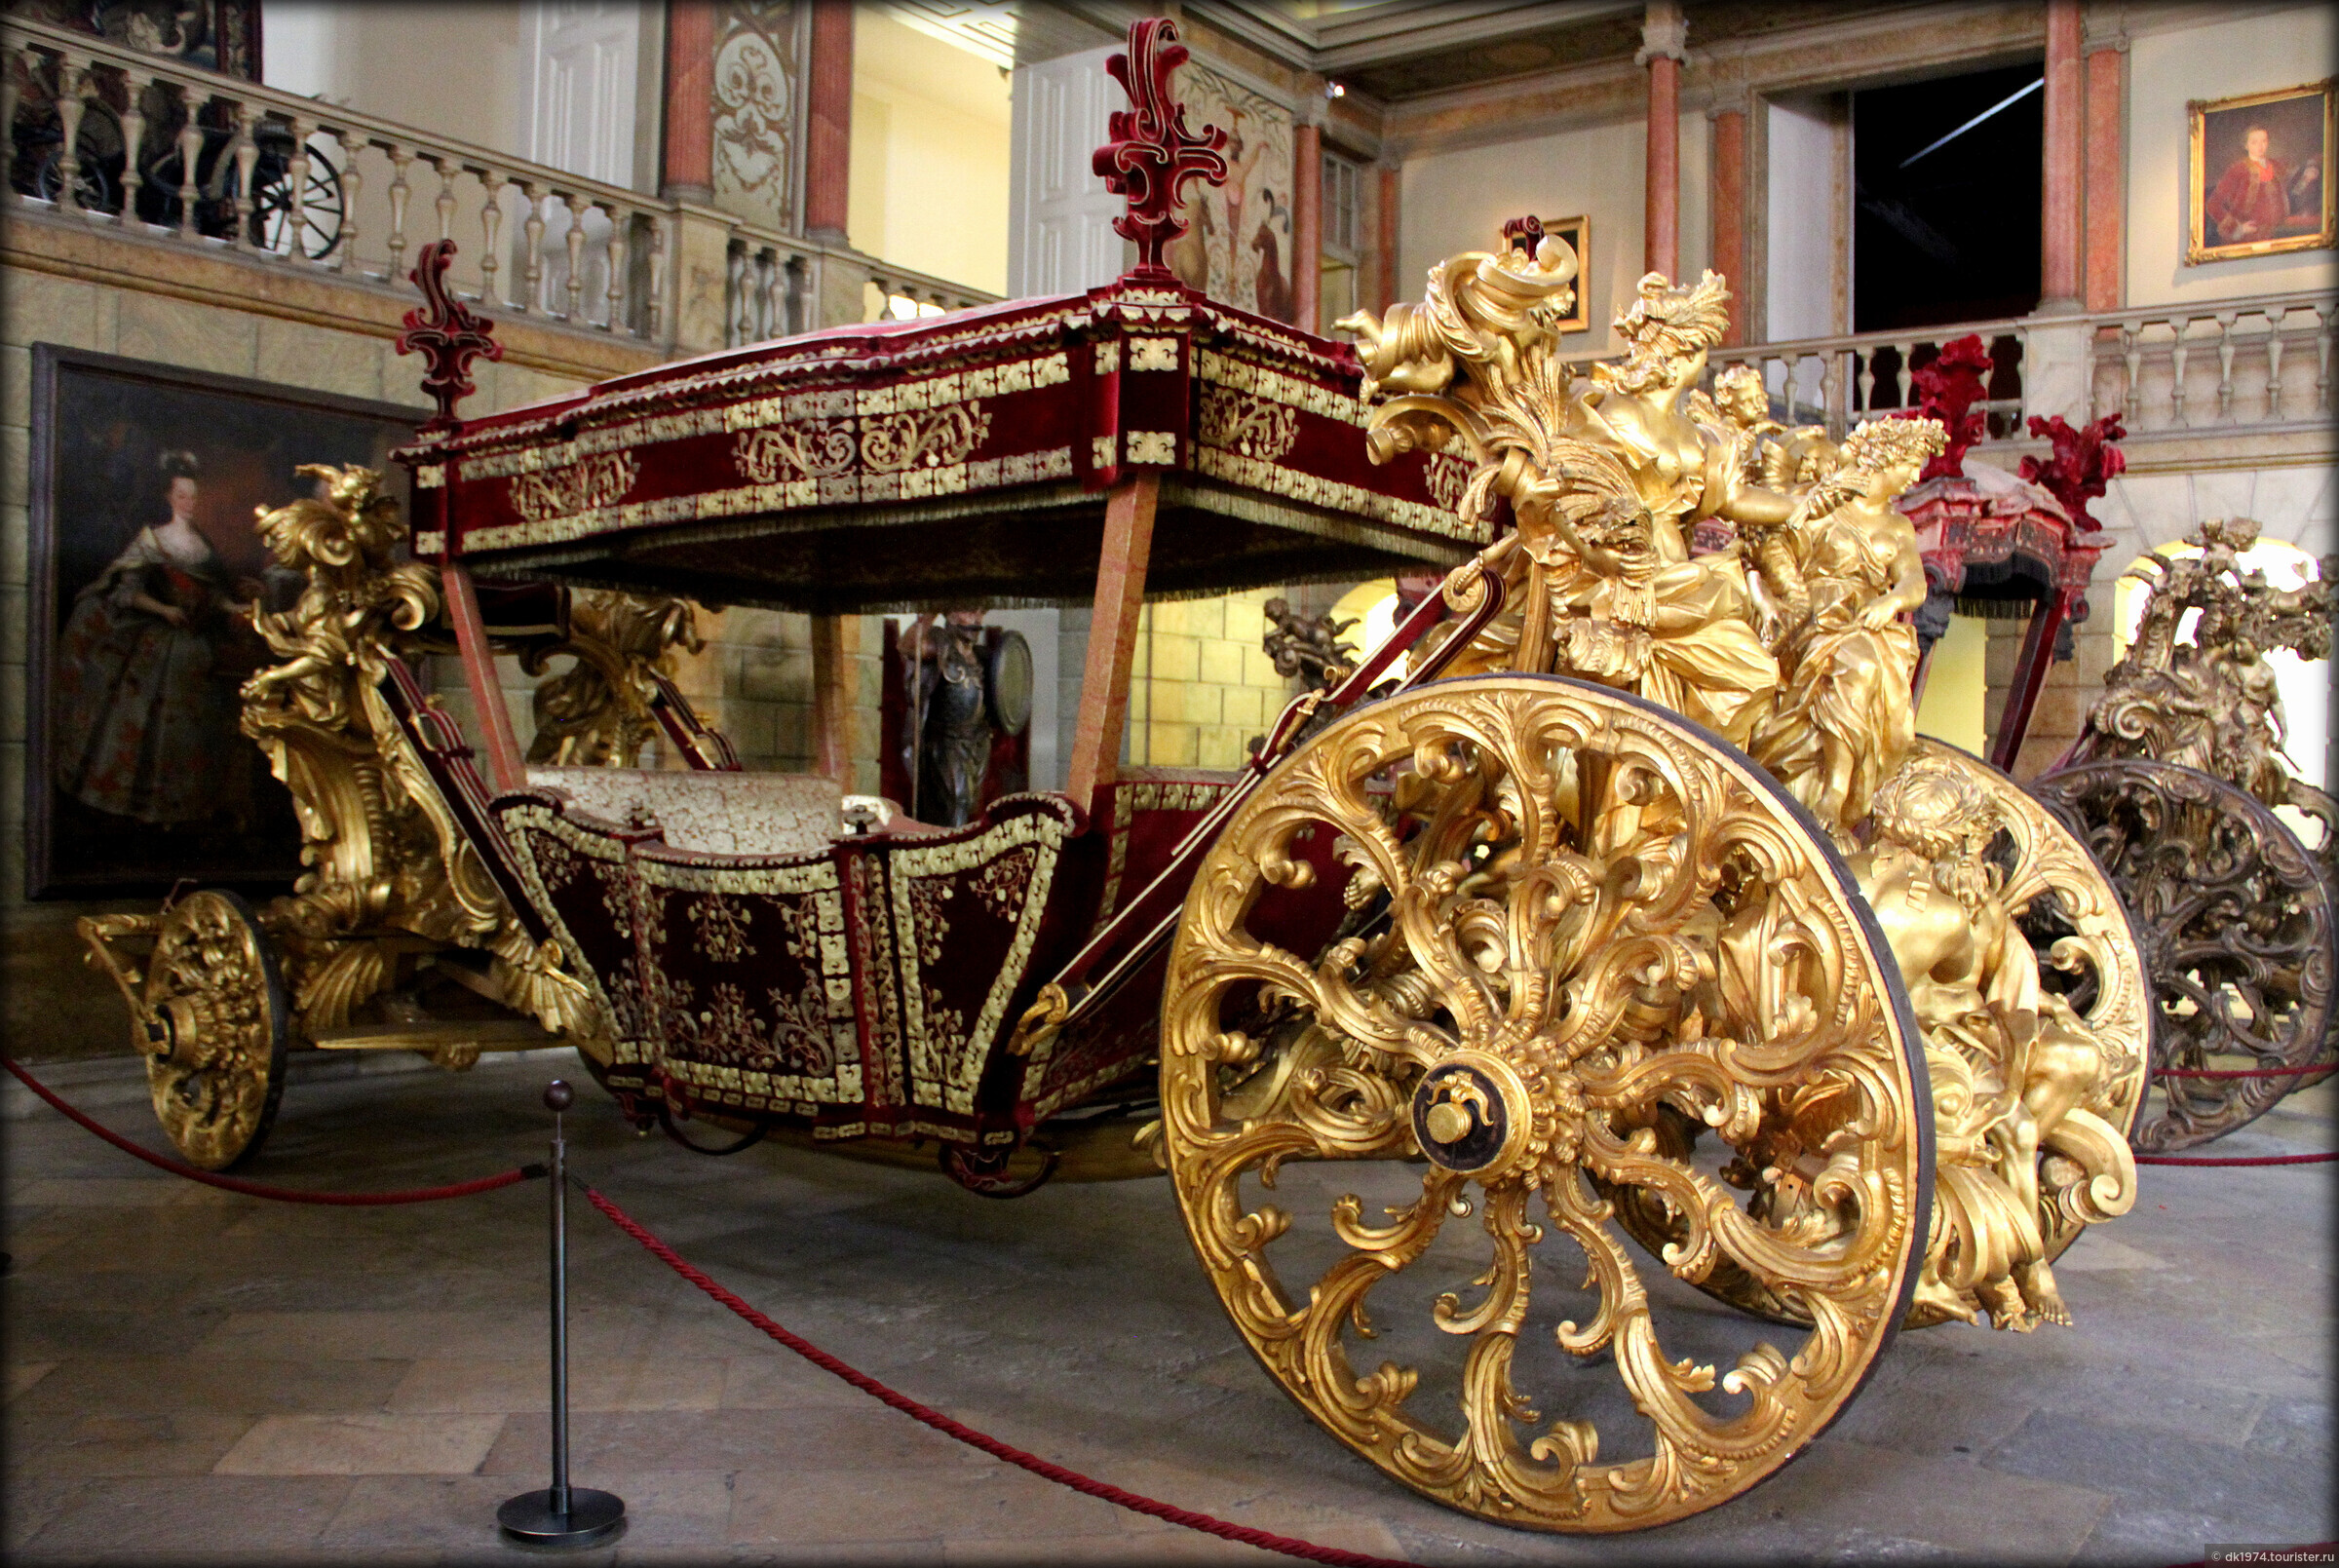 Богатая карета. Карета Петра 1 в Эрмитаже. Музей карет (Museu dos coches) в Лиссабоне, 2013. Золотая карета в Эрмитаже.